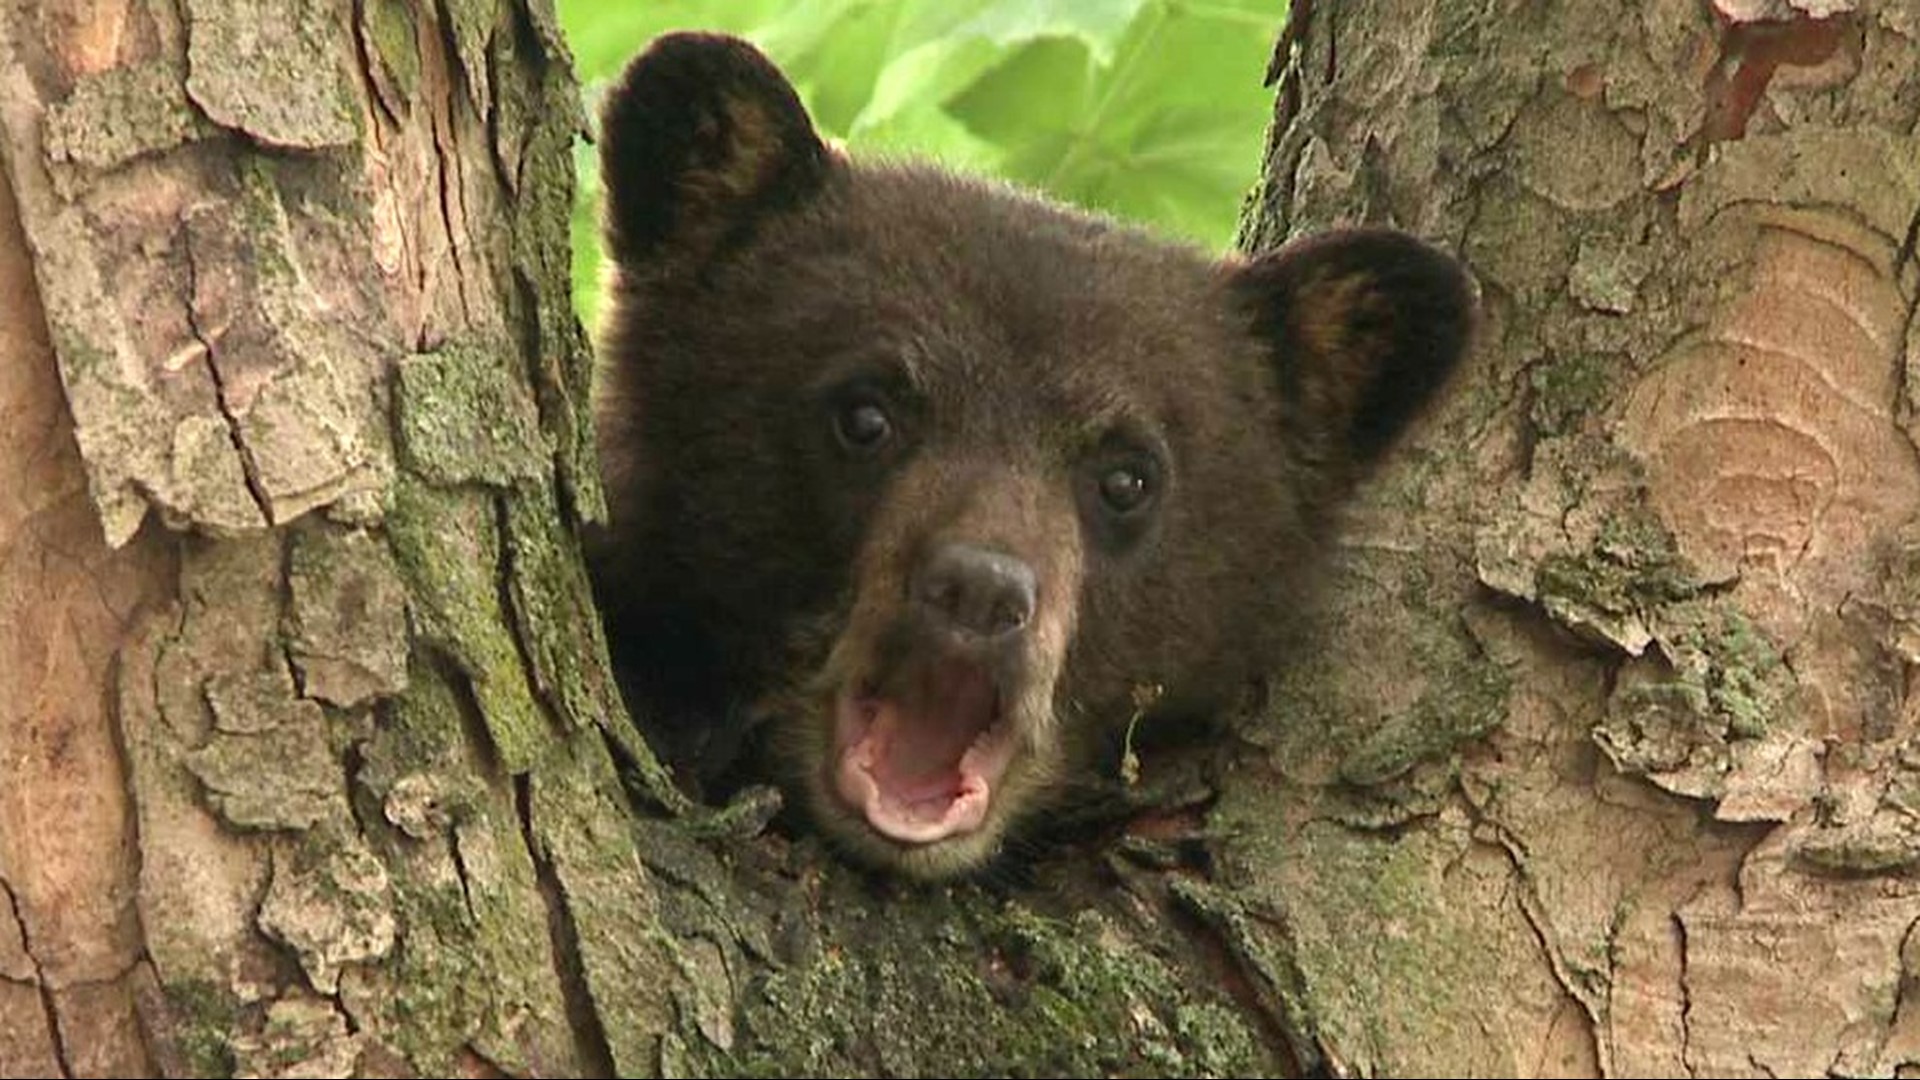 WATCH: Very Cute Bear Cub in a Tree